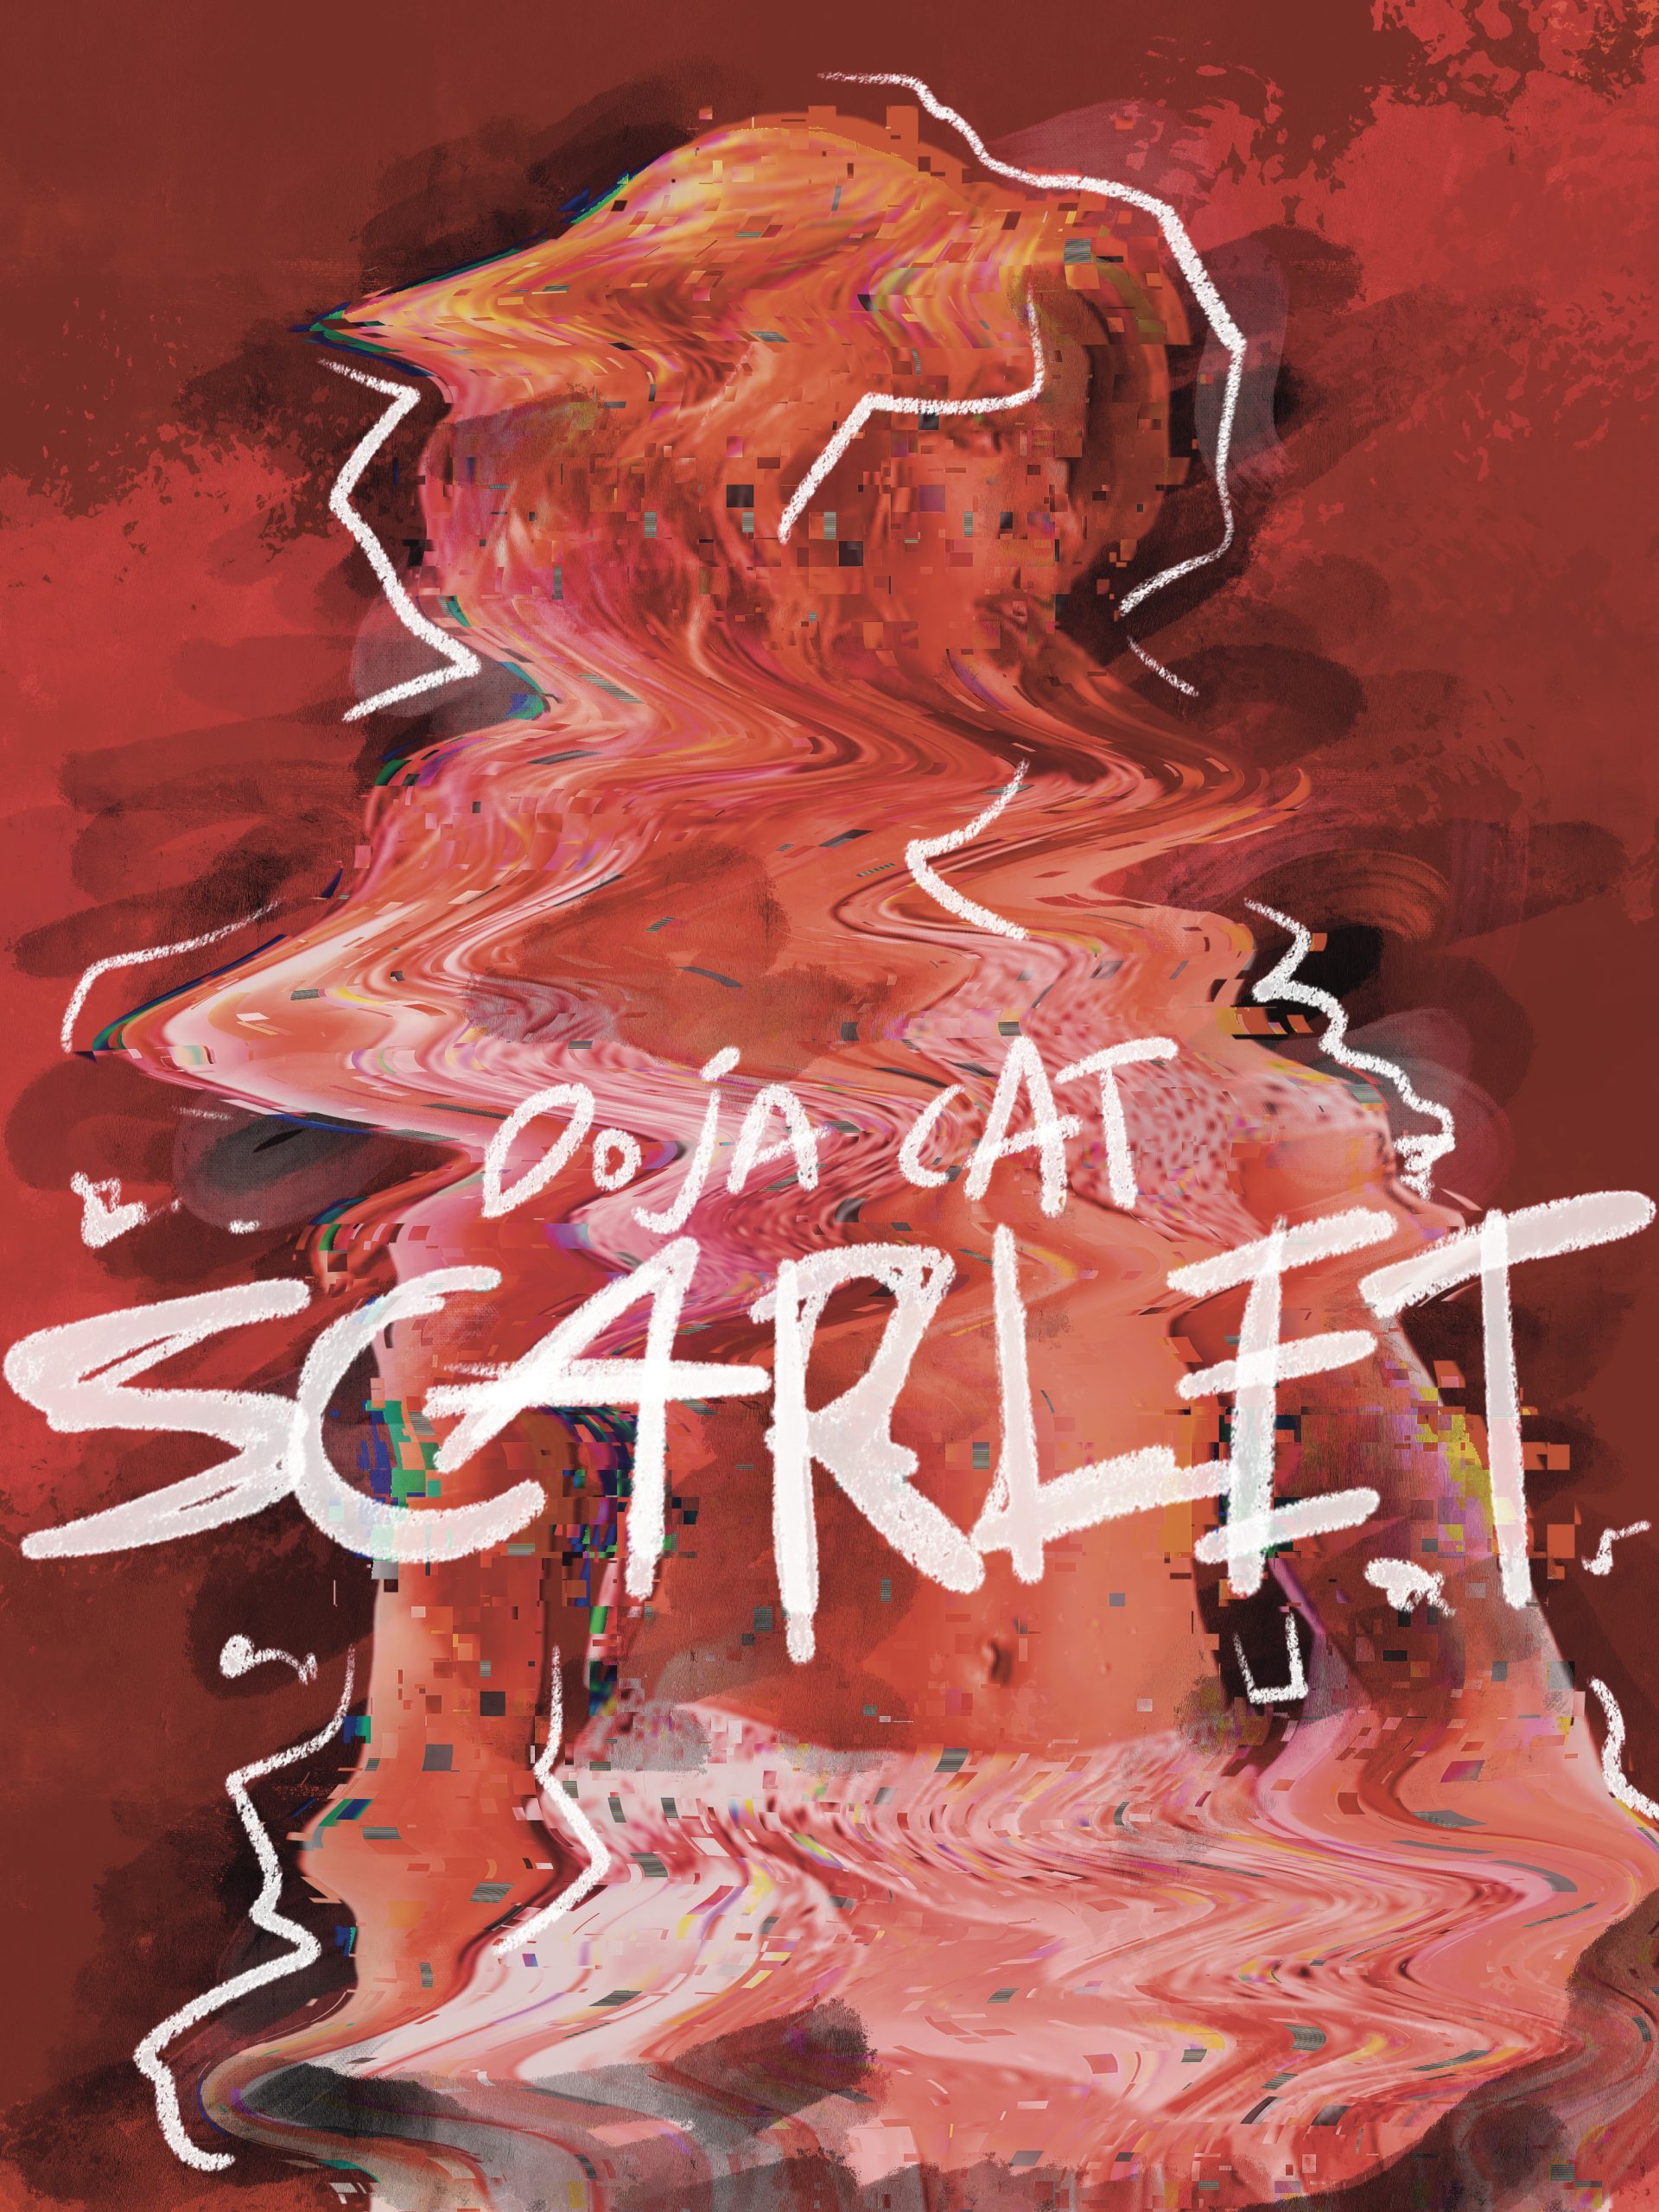 Doja Cat SCARLET Album Poster – rsdesignstudio